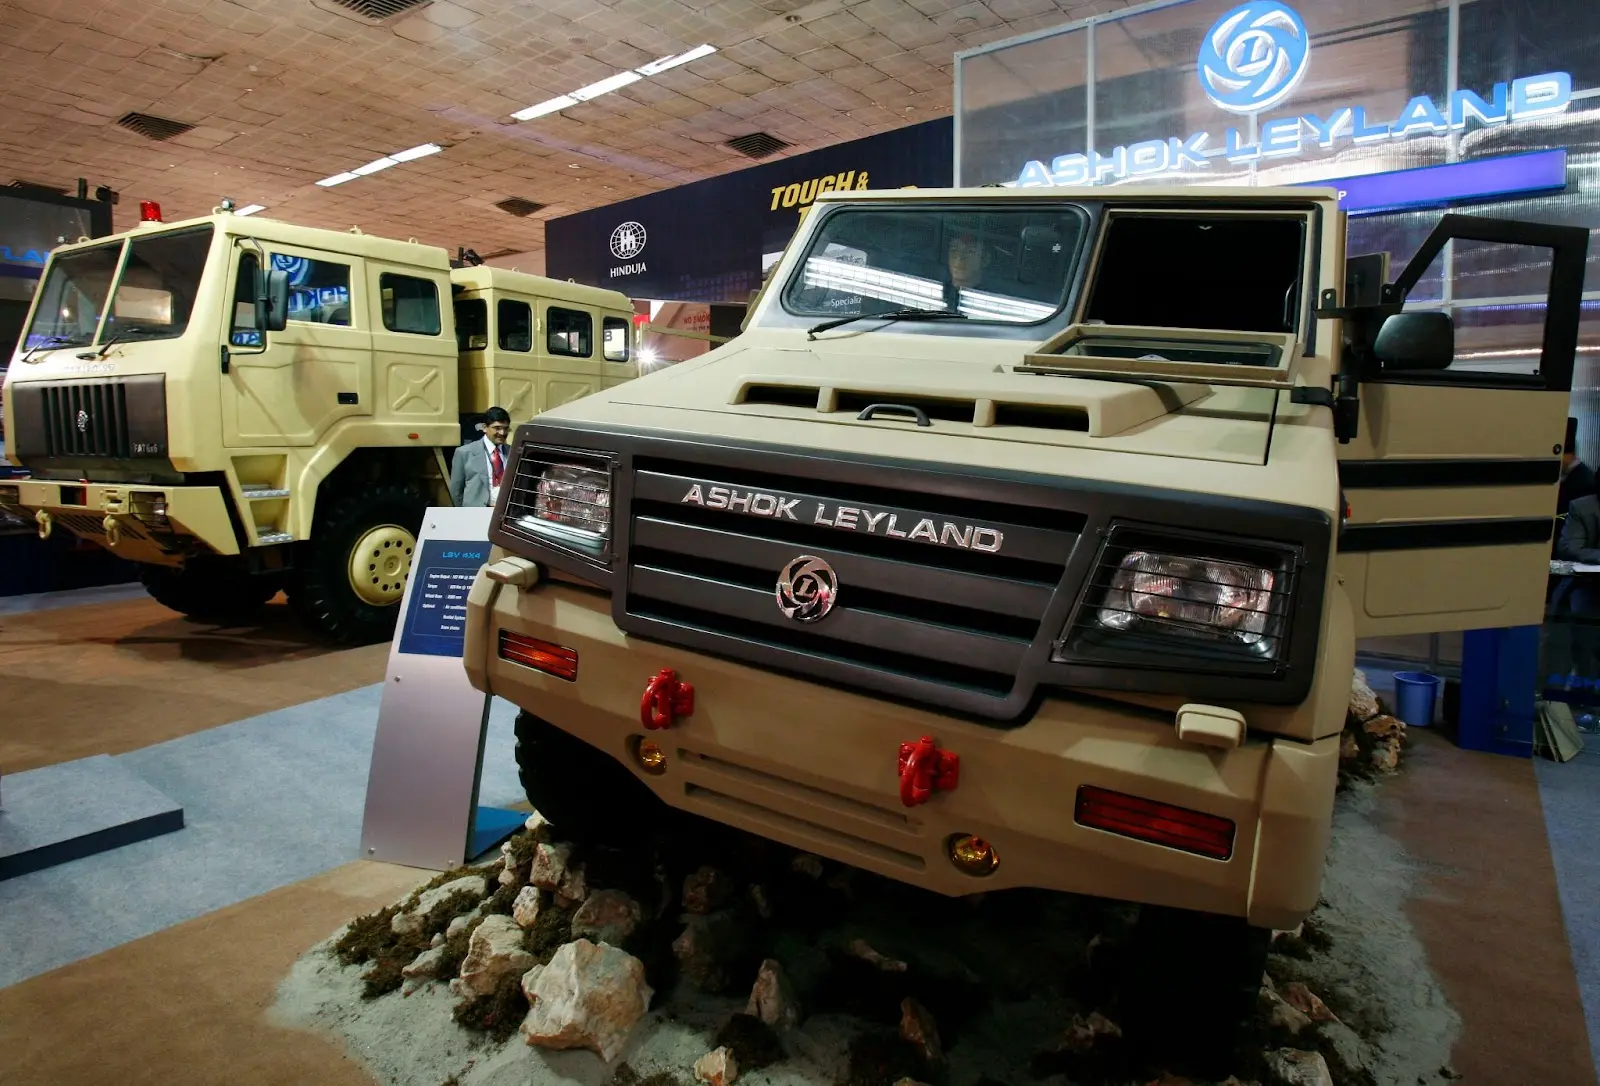 Image of Ashok Leyland's product: a construction vehicle